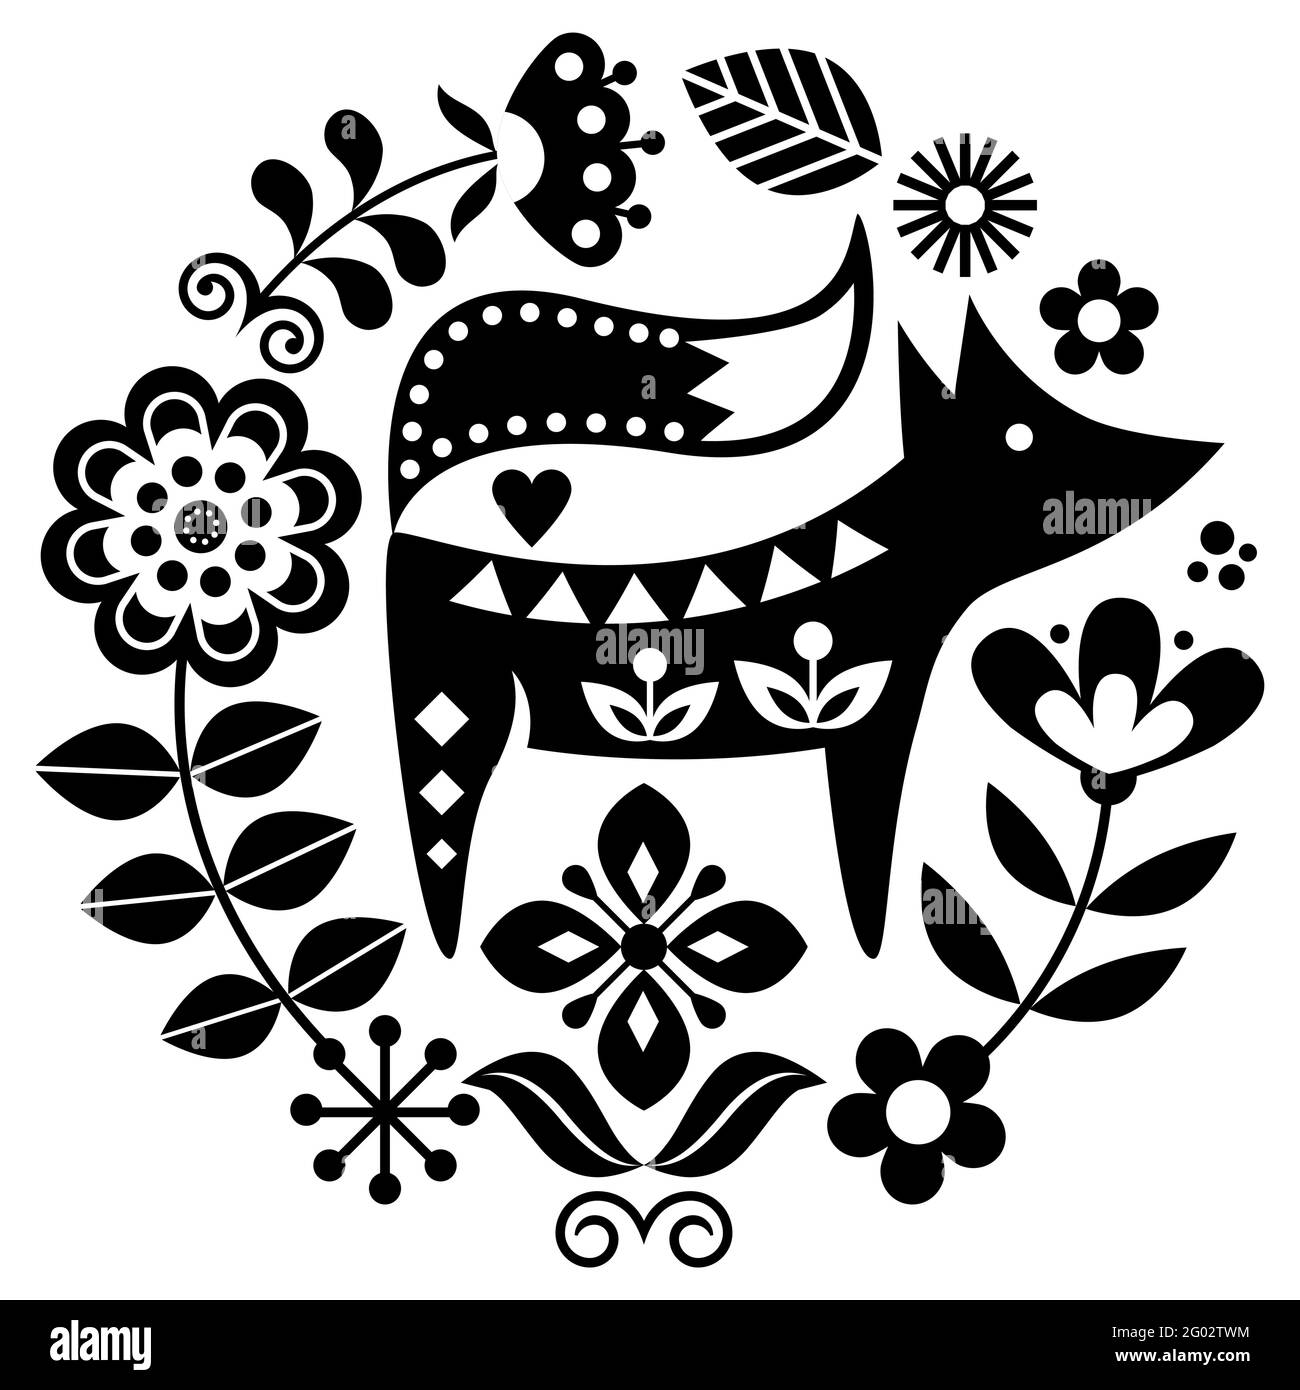 Disegno circolare vettoriale d'arte folcloristica scandinava con fiori e volpe, biglietto d'auguri floreali in bianco e nero o invito ispirato al ricamo tradizionale Illustrazione Vettoriale